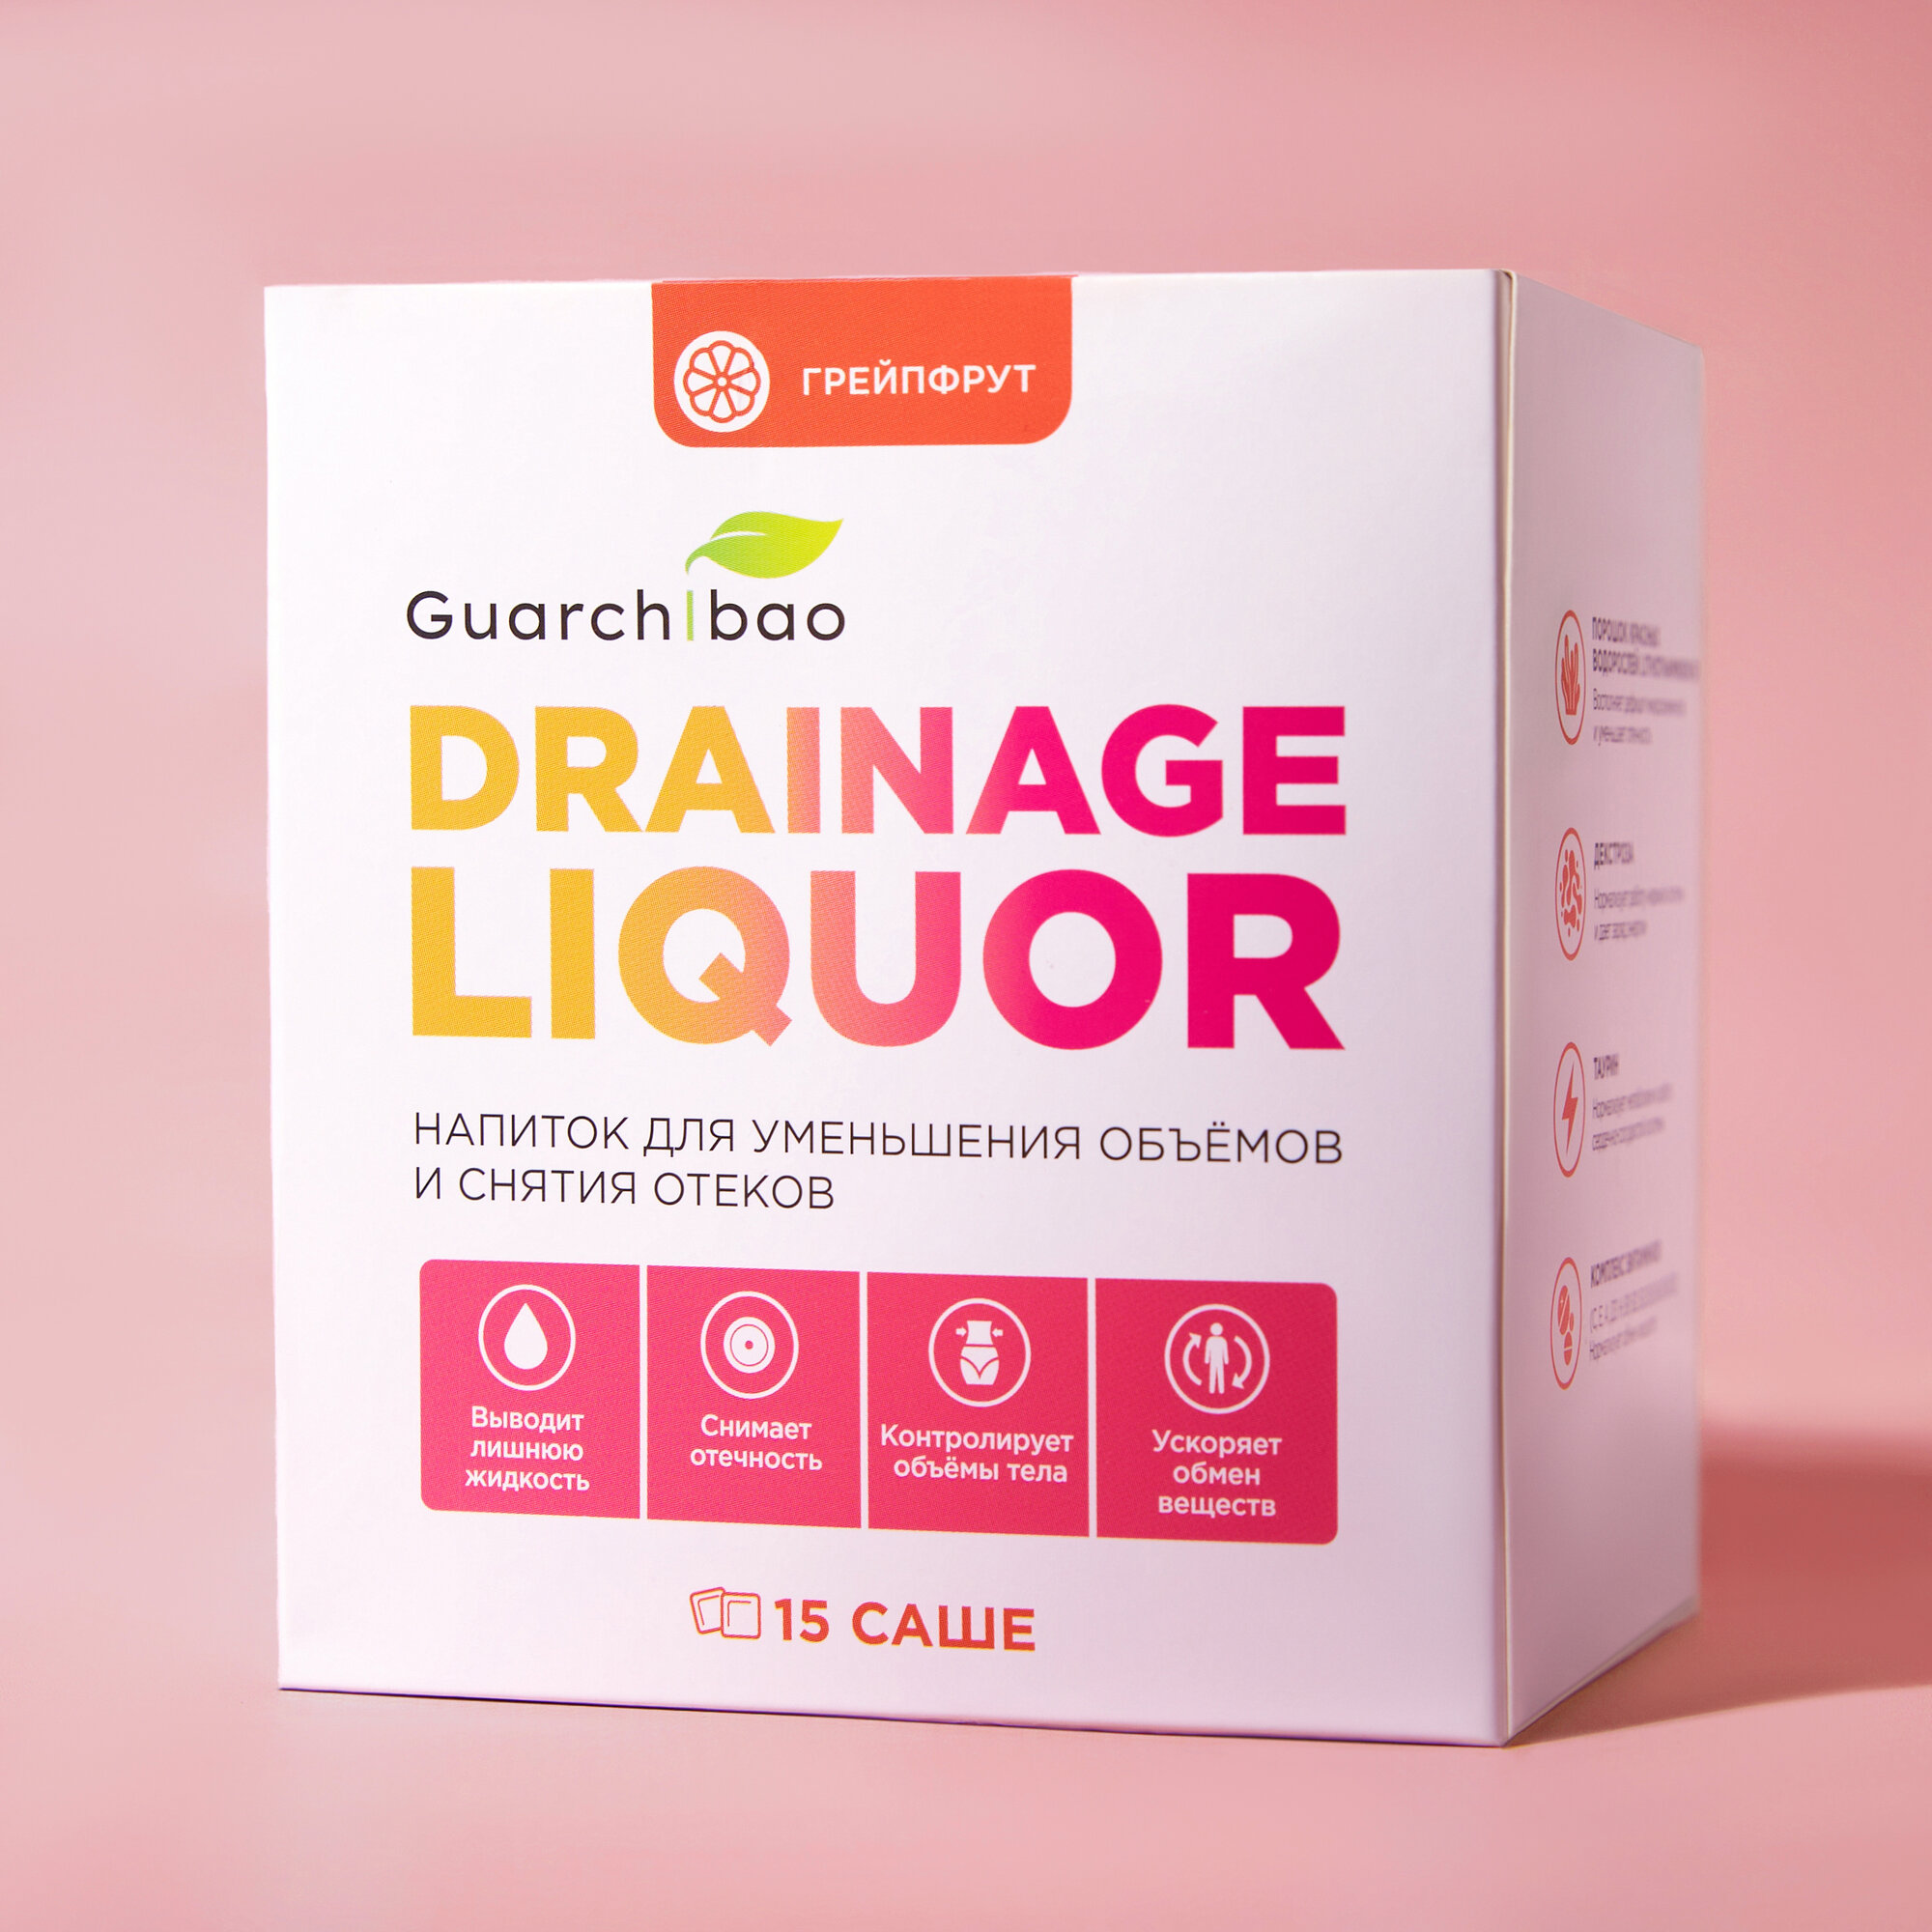 Дренажный напиток Guarchibao Drainage Liquor со вкусом Грейпфрута для снятия отеков и уменьшения объемов, для похудения, 1 упаковка (15 порций)